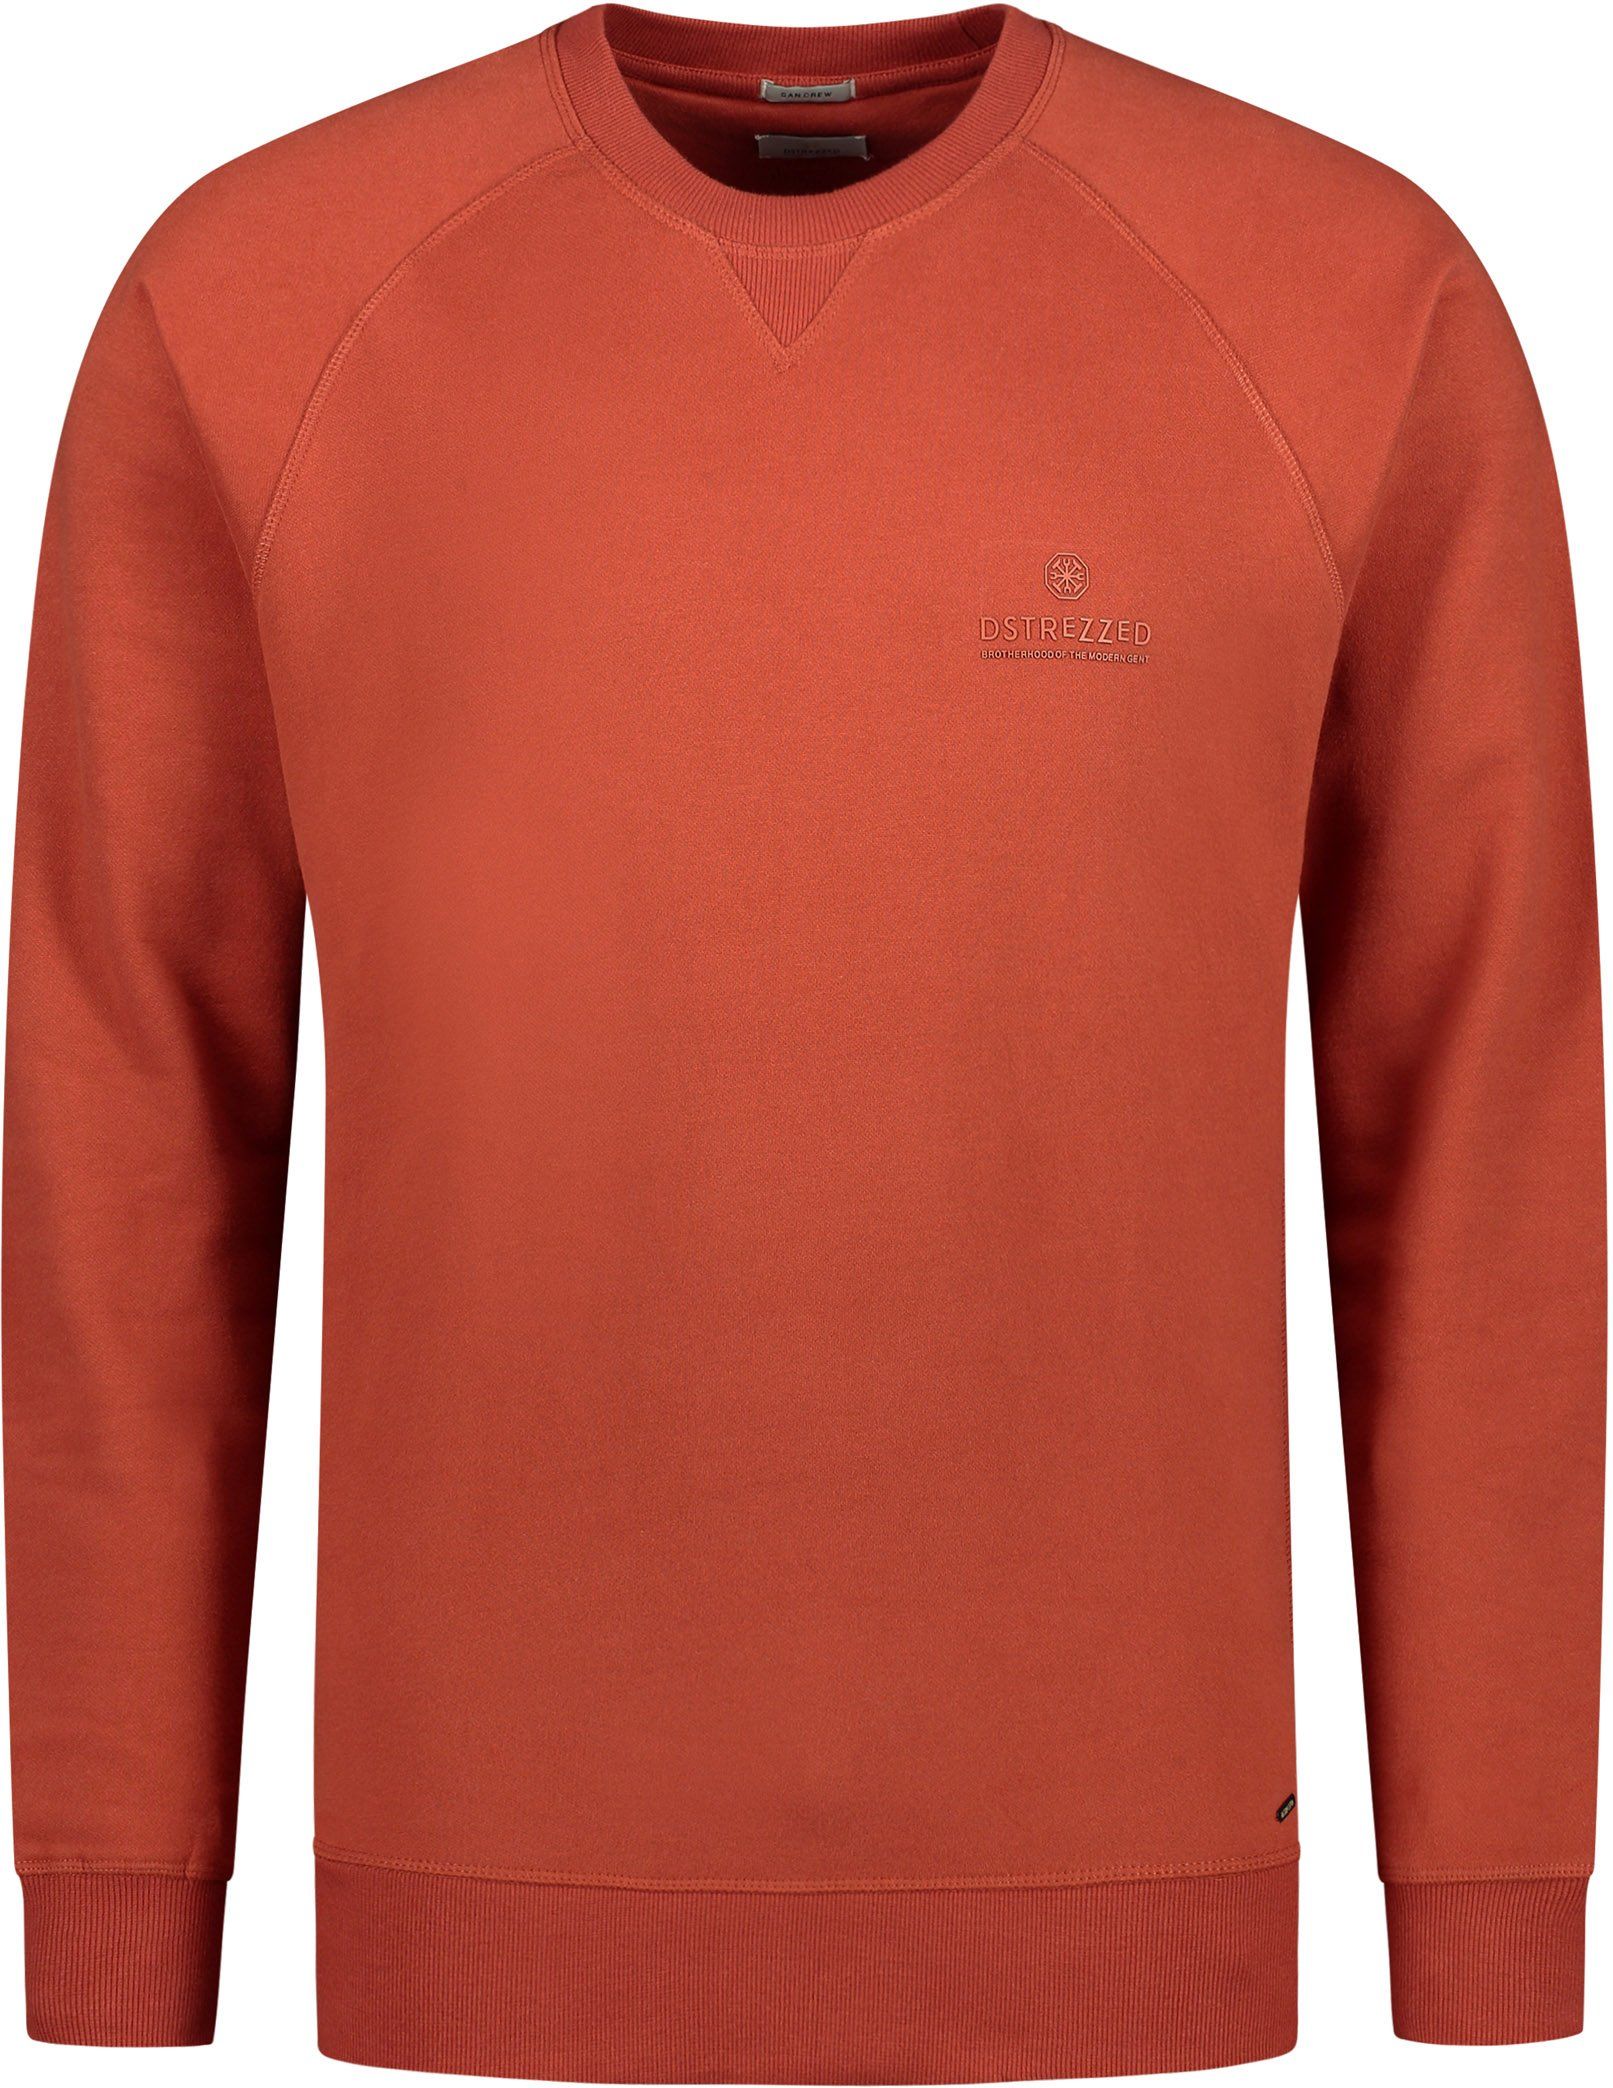 Dstrezzed Sweater Red size XXL